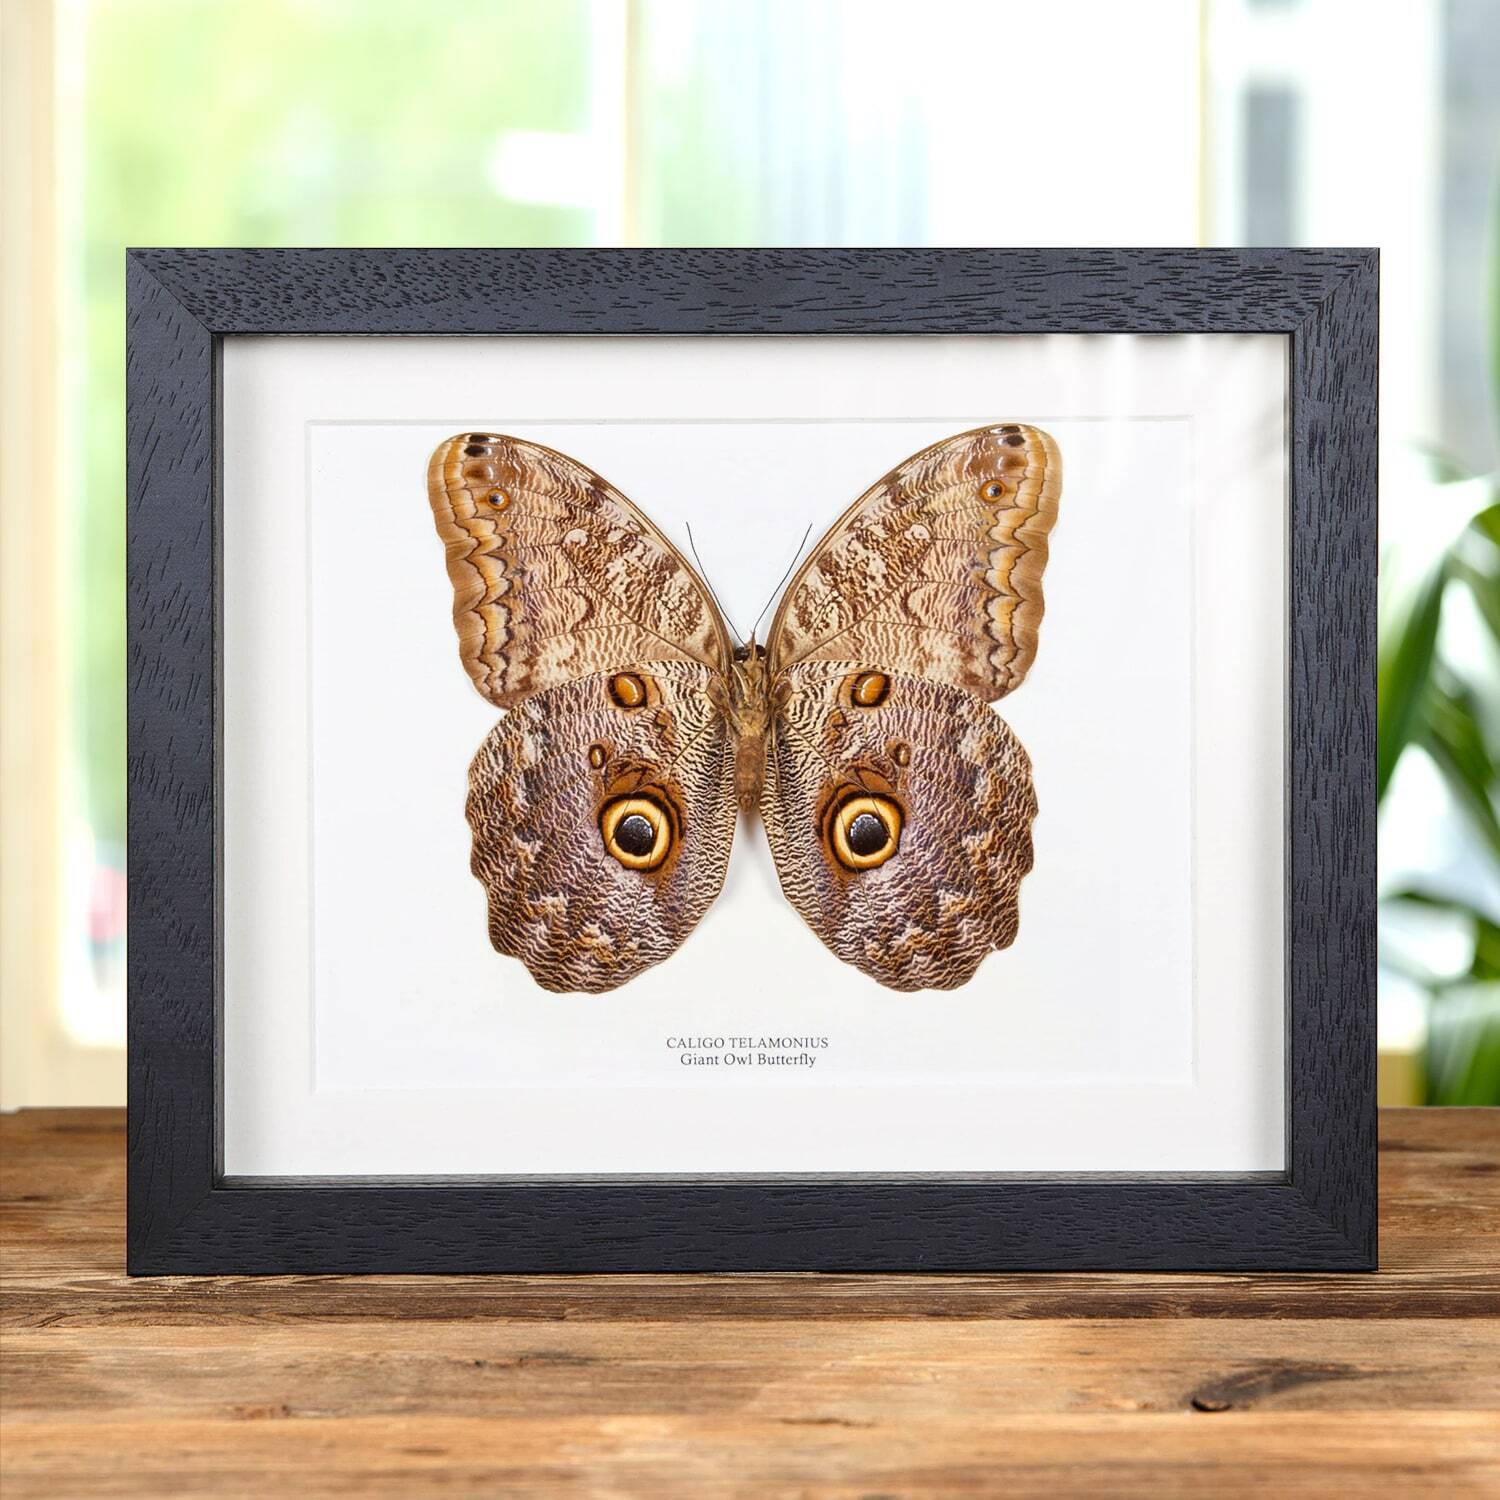 Giant Owl Taxidermy Butterfly Frame (Caligo telamonius)